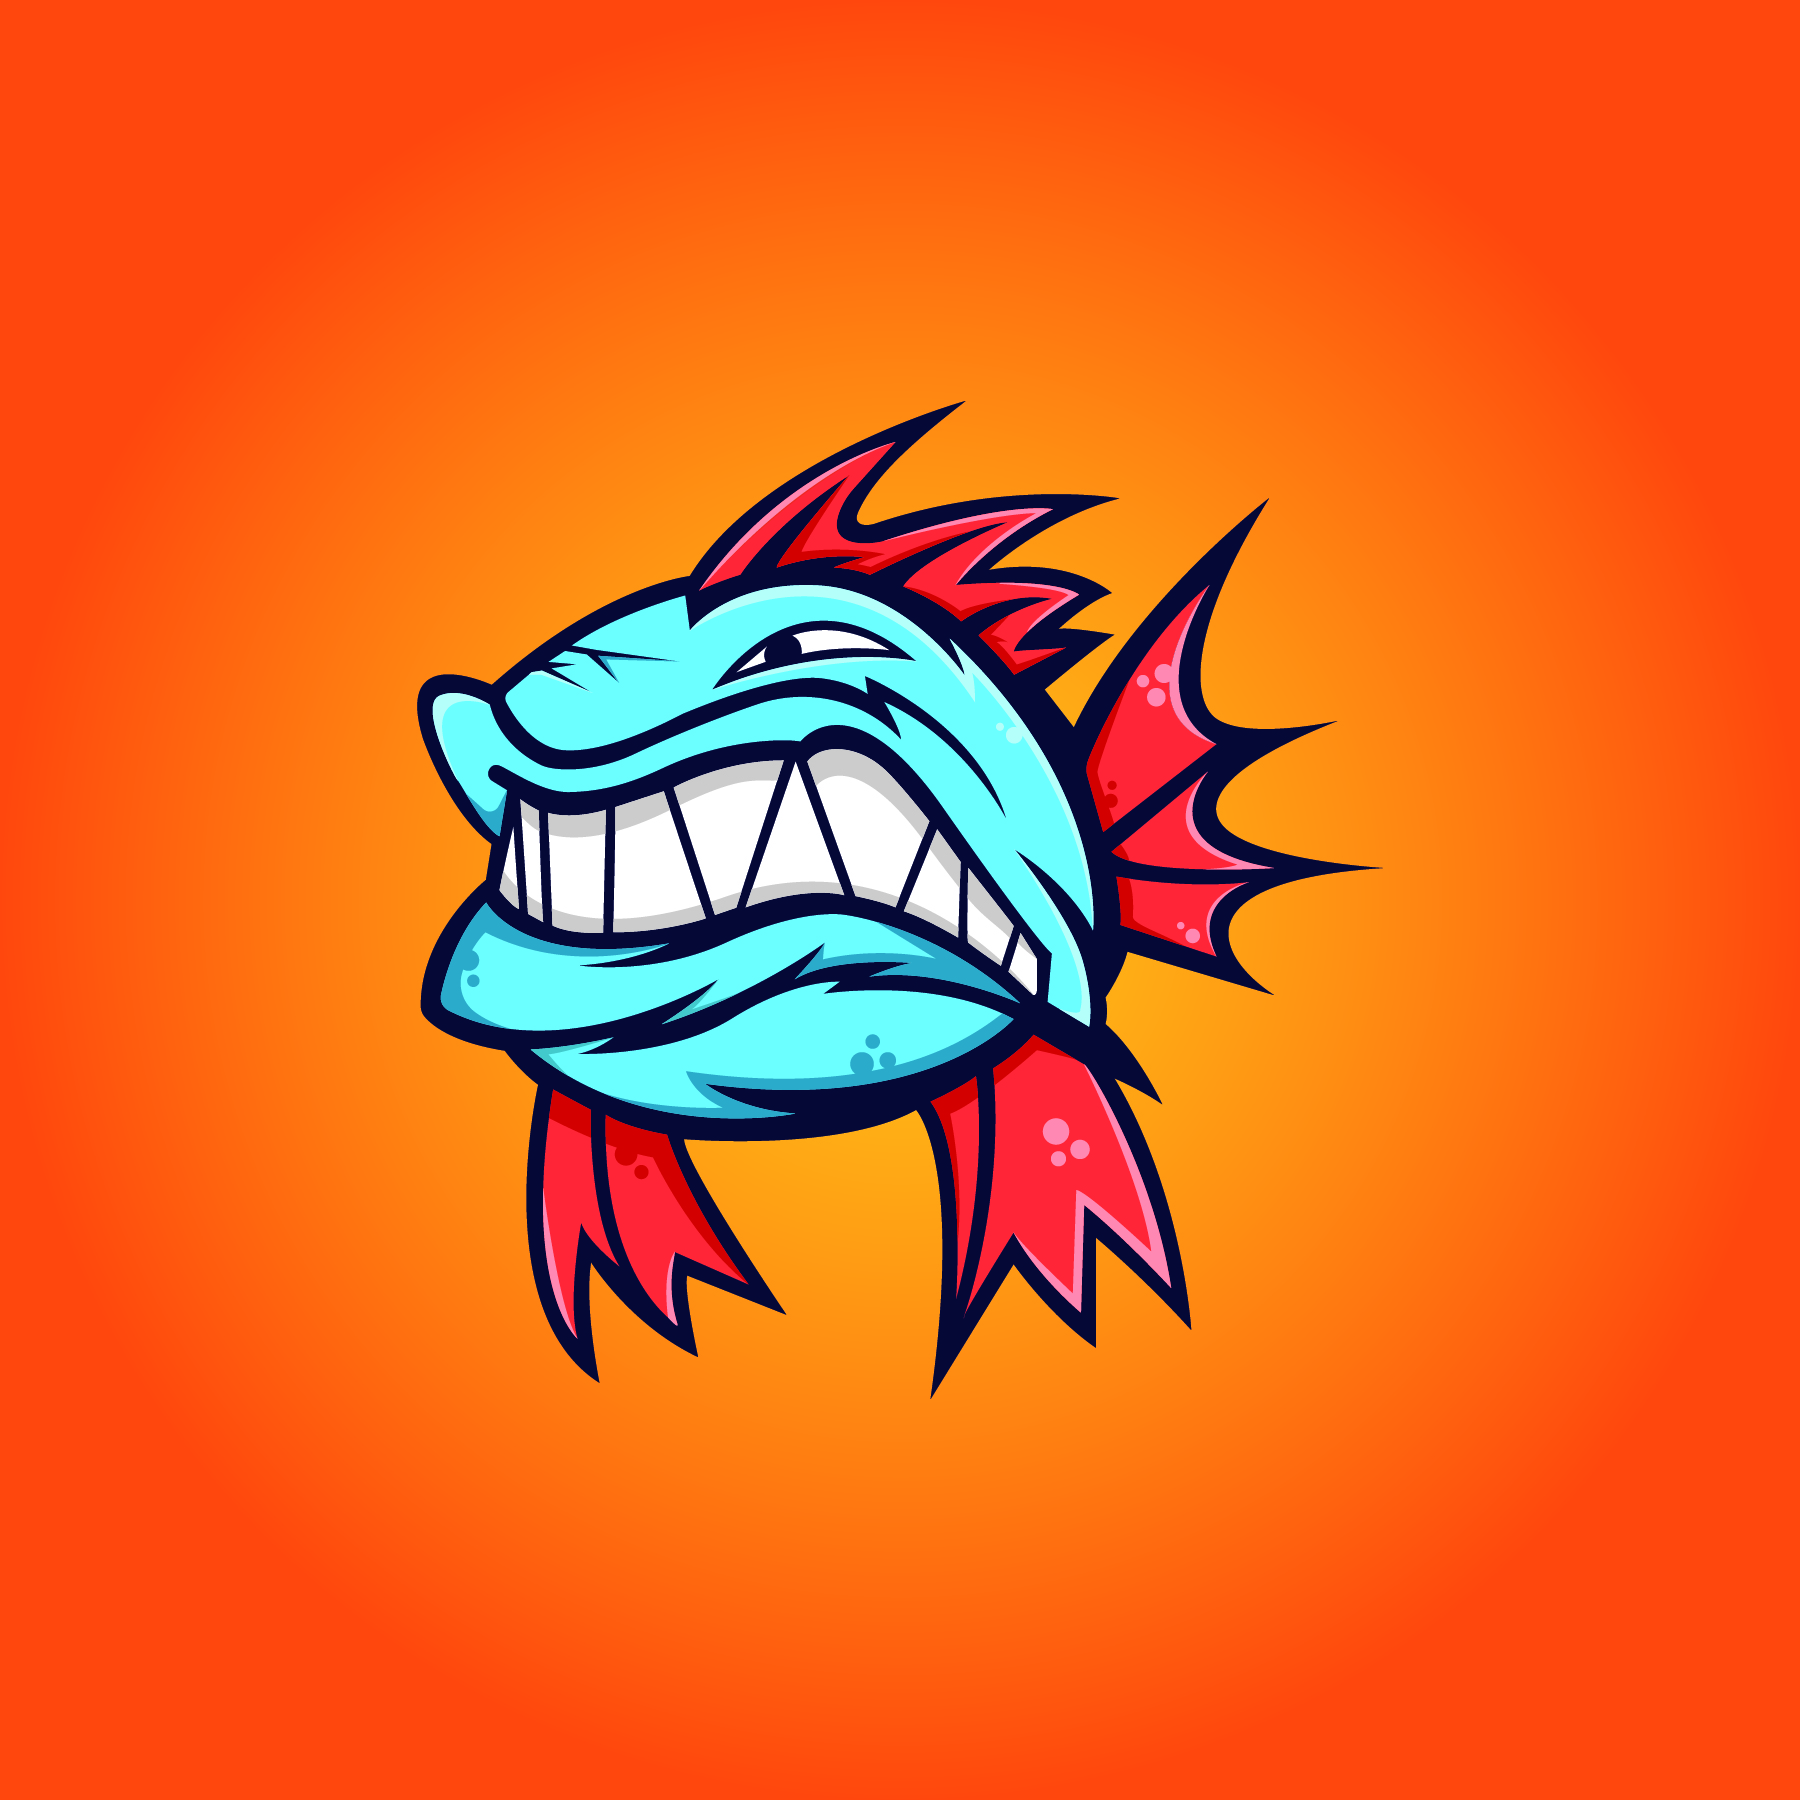 Badfish_Logo-01.jpg